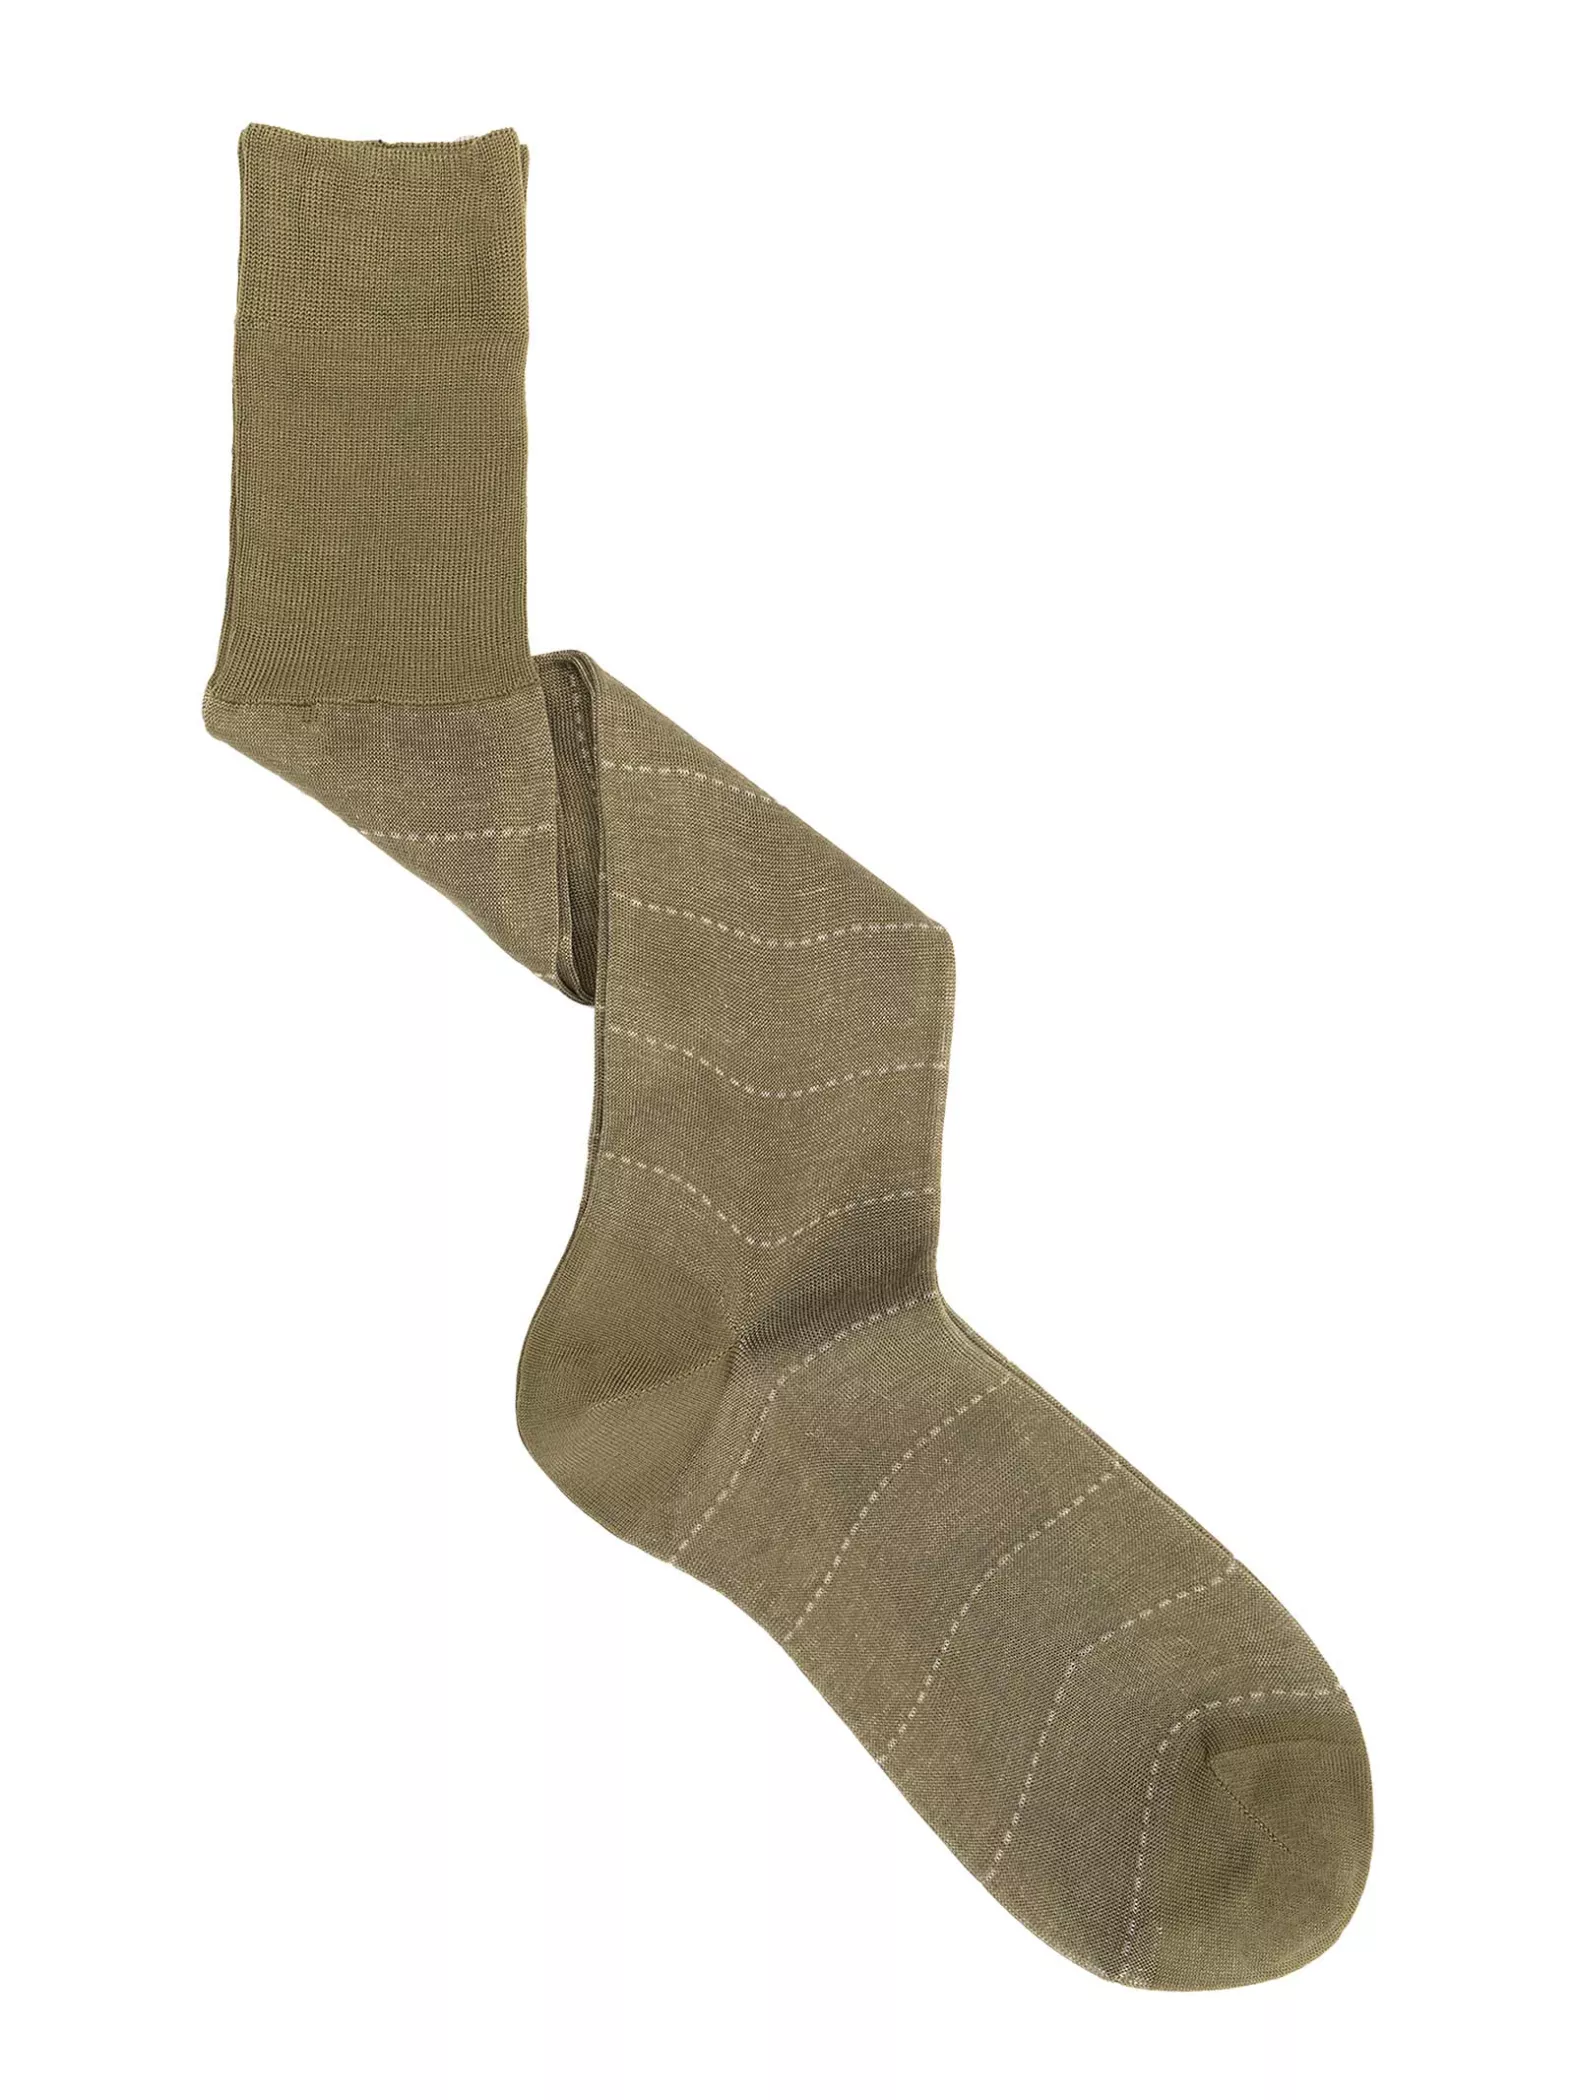 Striped Knee High Vanisè Socks in Filo di Scozia Cotton